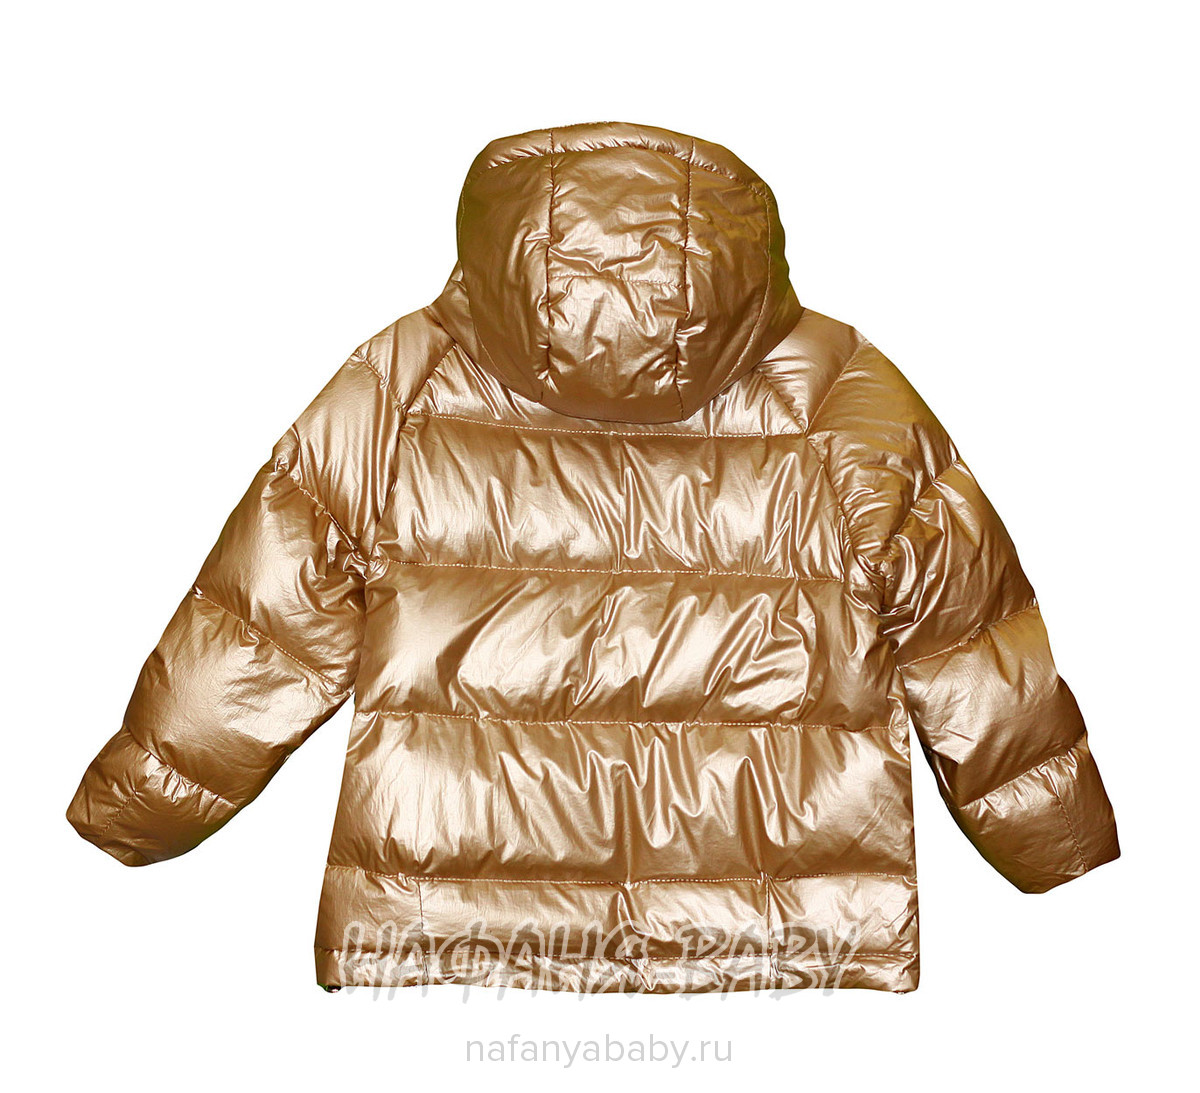 Детская демисезонная куртка L.Z.W.B.G., купить в интернет магазине Нафаня. арт: 9880.